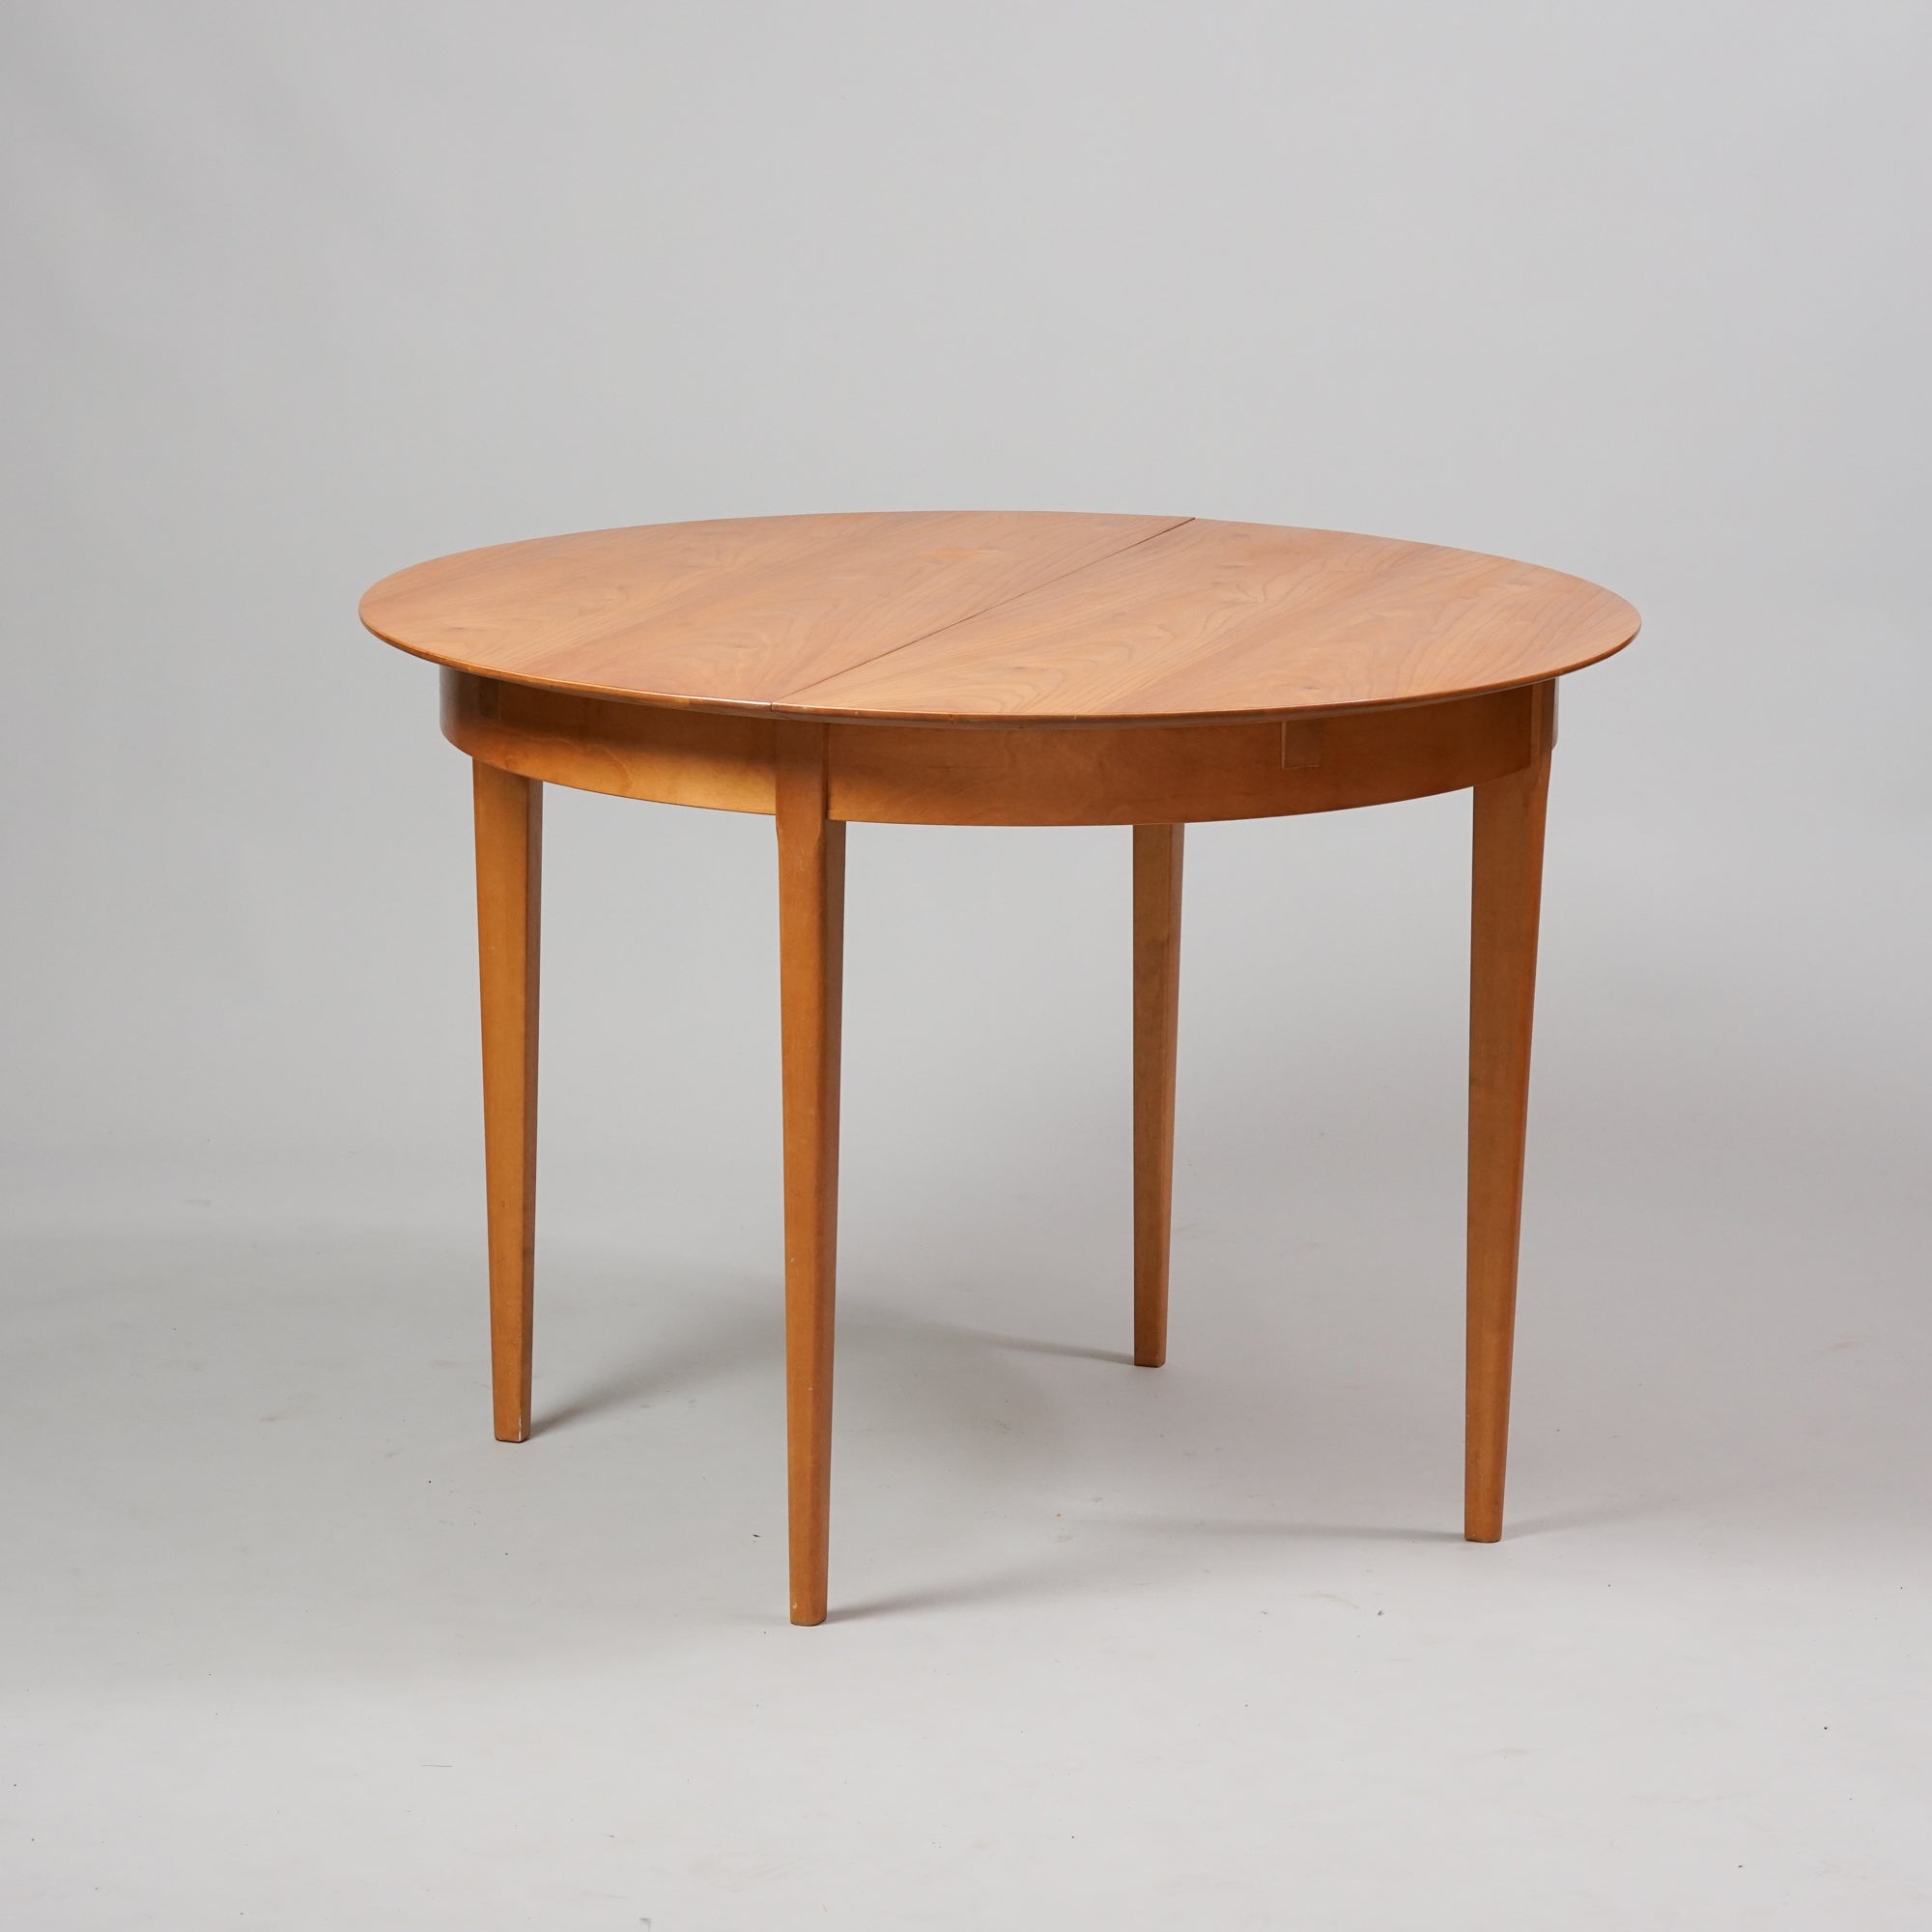 Pyöreä jatkettava pöytä, joka on tehty jalavasta ja koivusta.